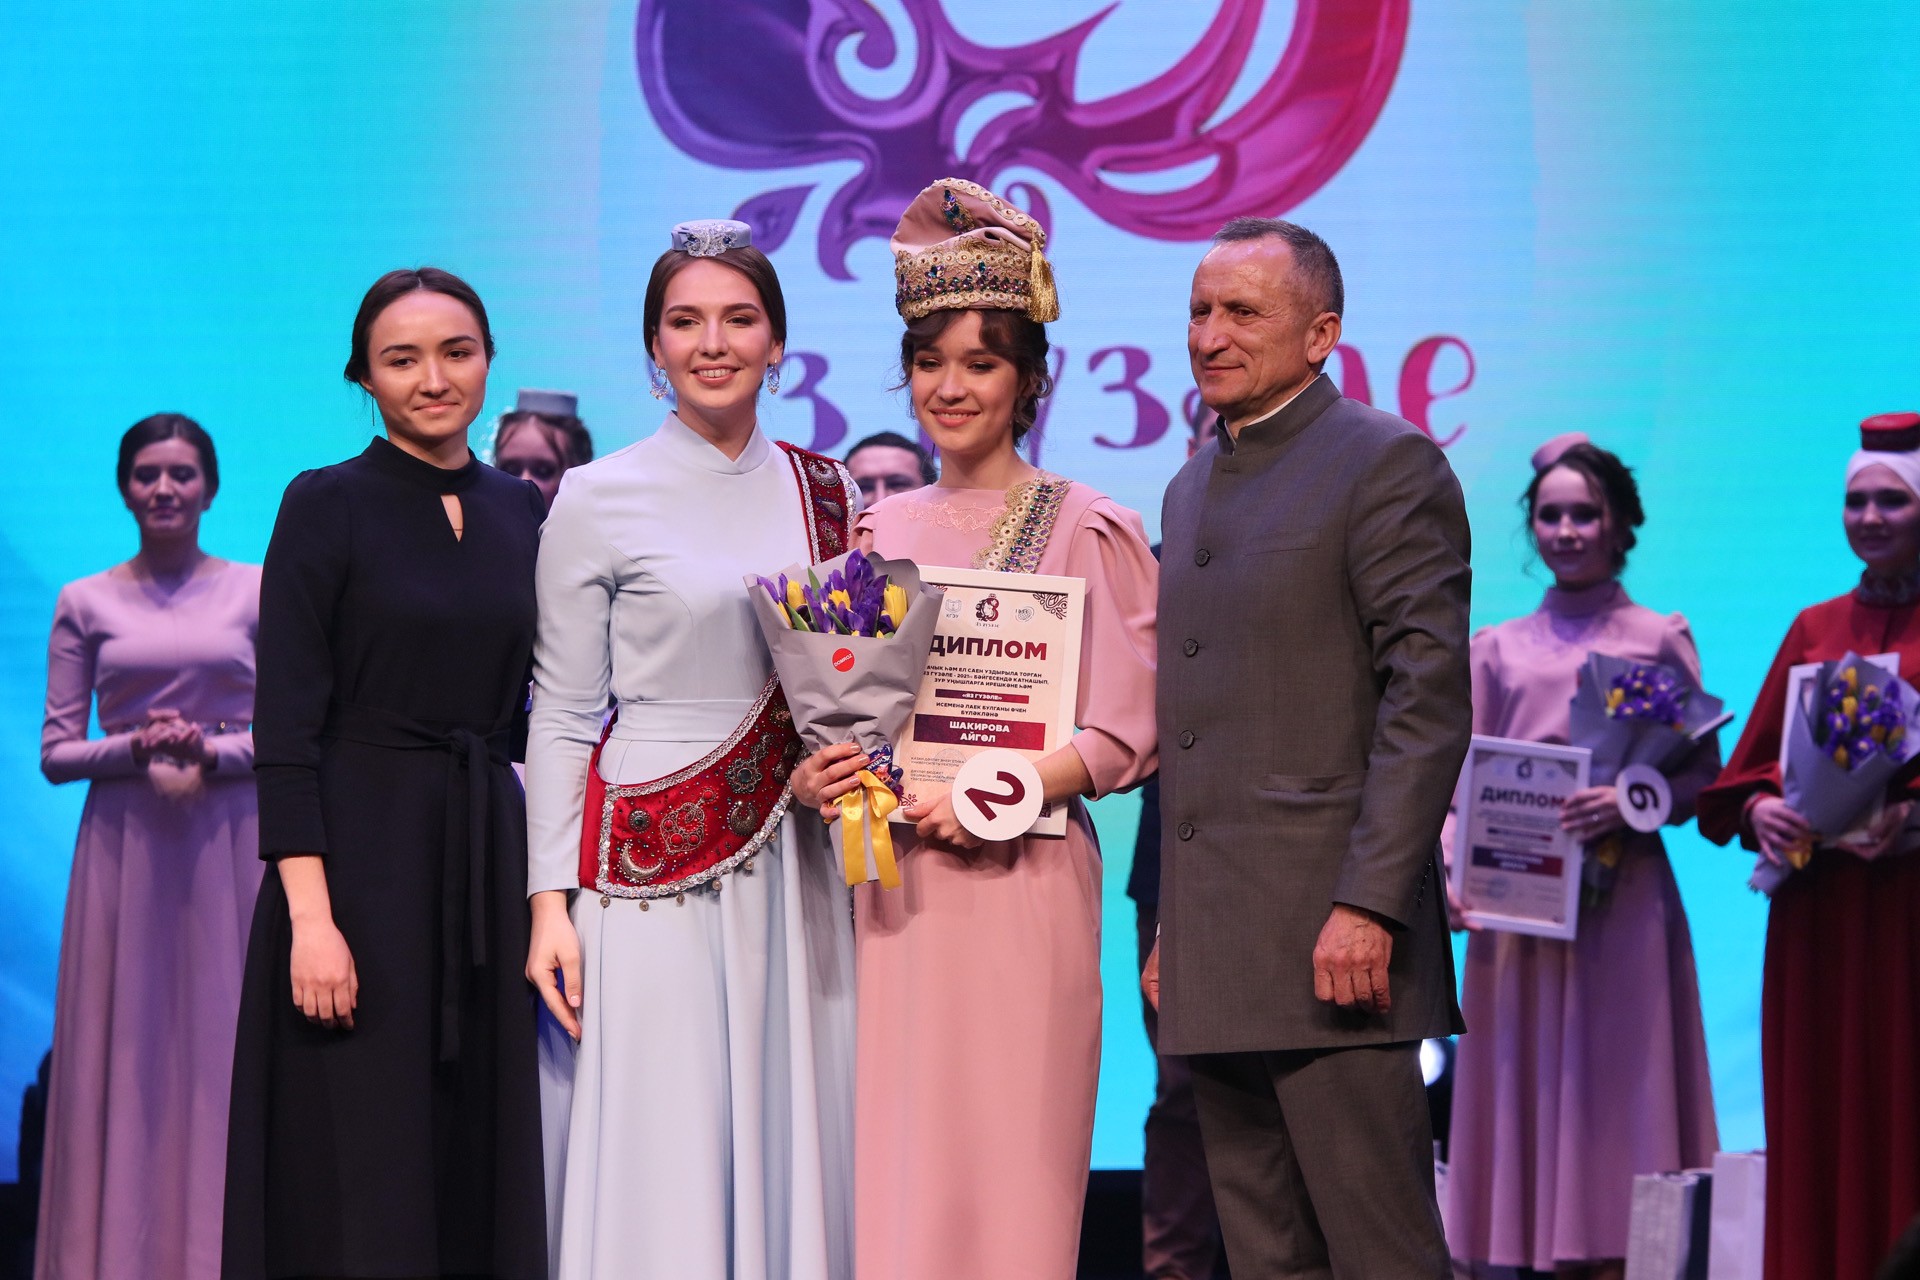 KFU student Aygul Shakirova wins Tatar language talent pageant Yaz Guzale 2021